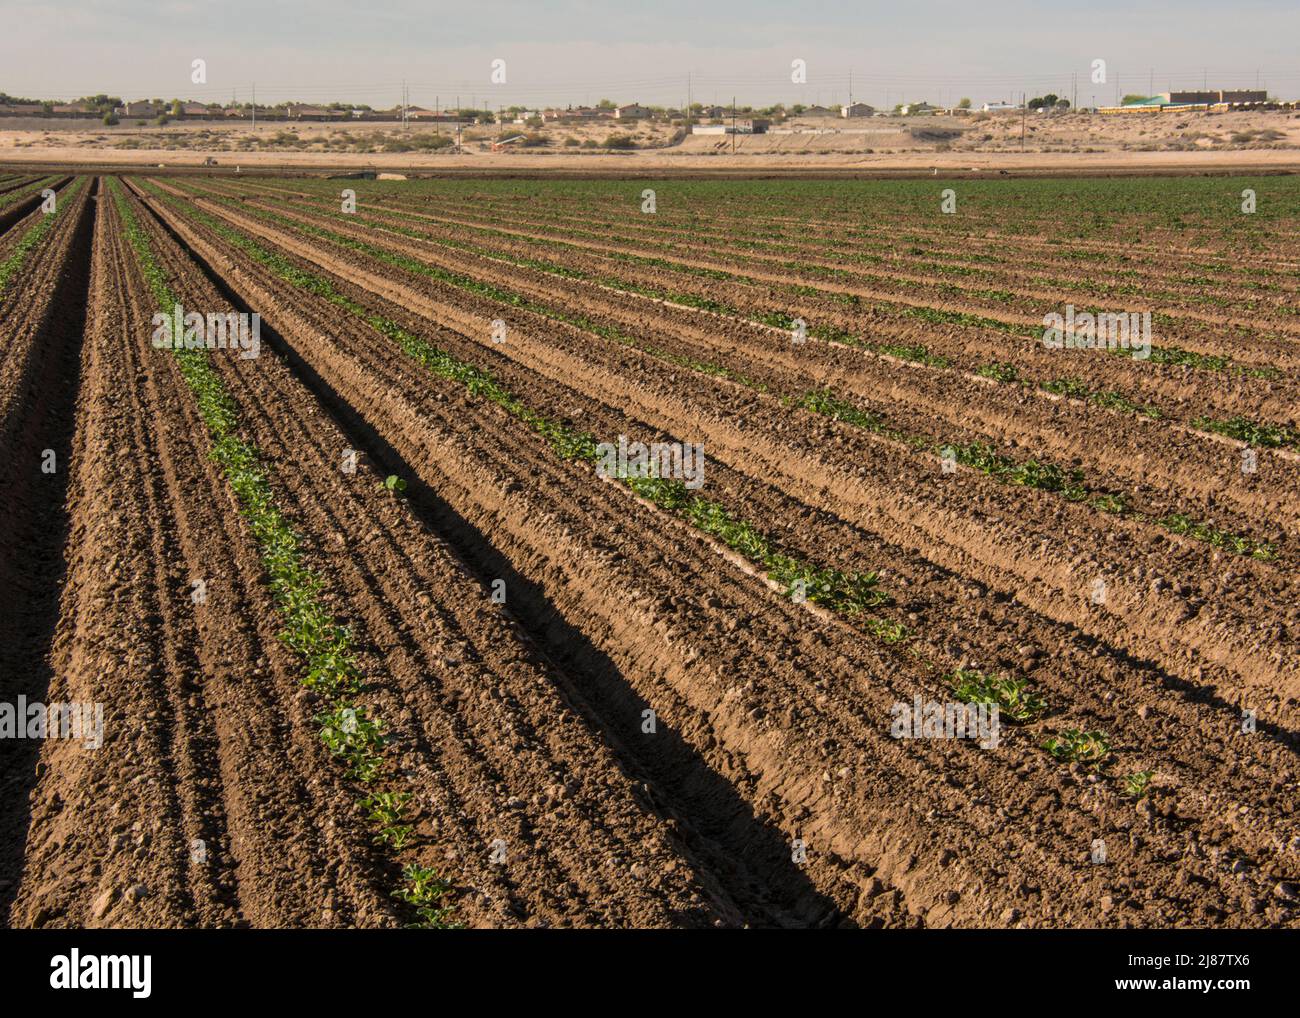 Les cultures en rangs sont une grande entreprise agricole près de Yuma, en Arizona, aux États-Unis Banque D'Images